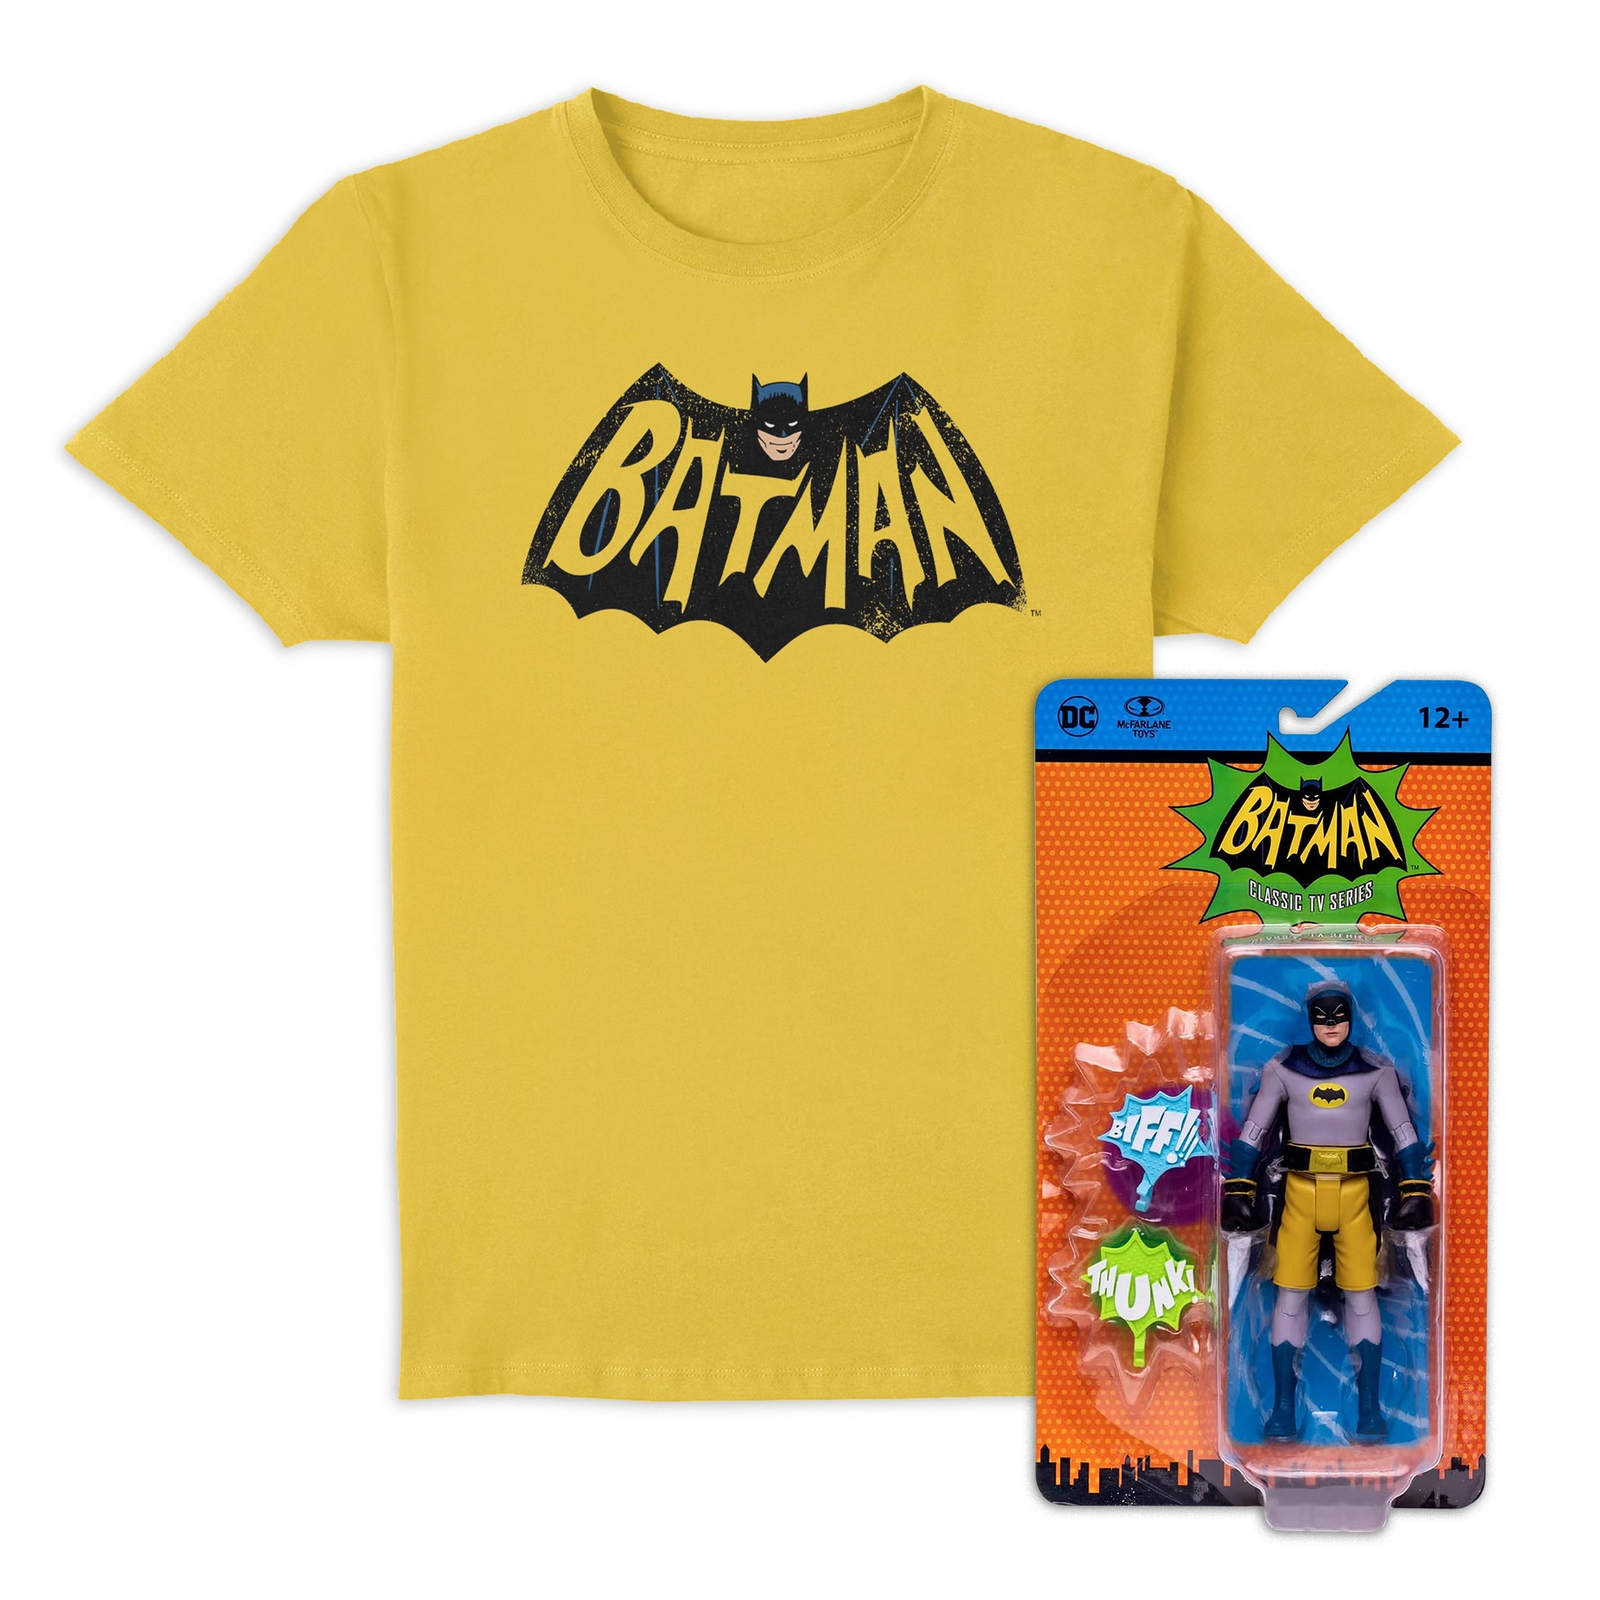 Batman 66 T-Shirt and McFarlane Action Figure Bundle - L